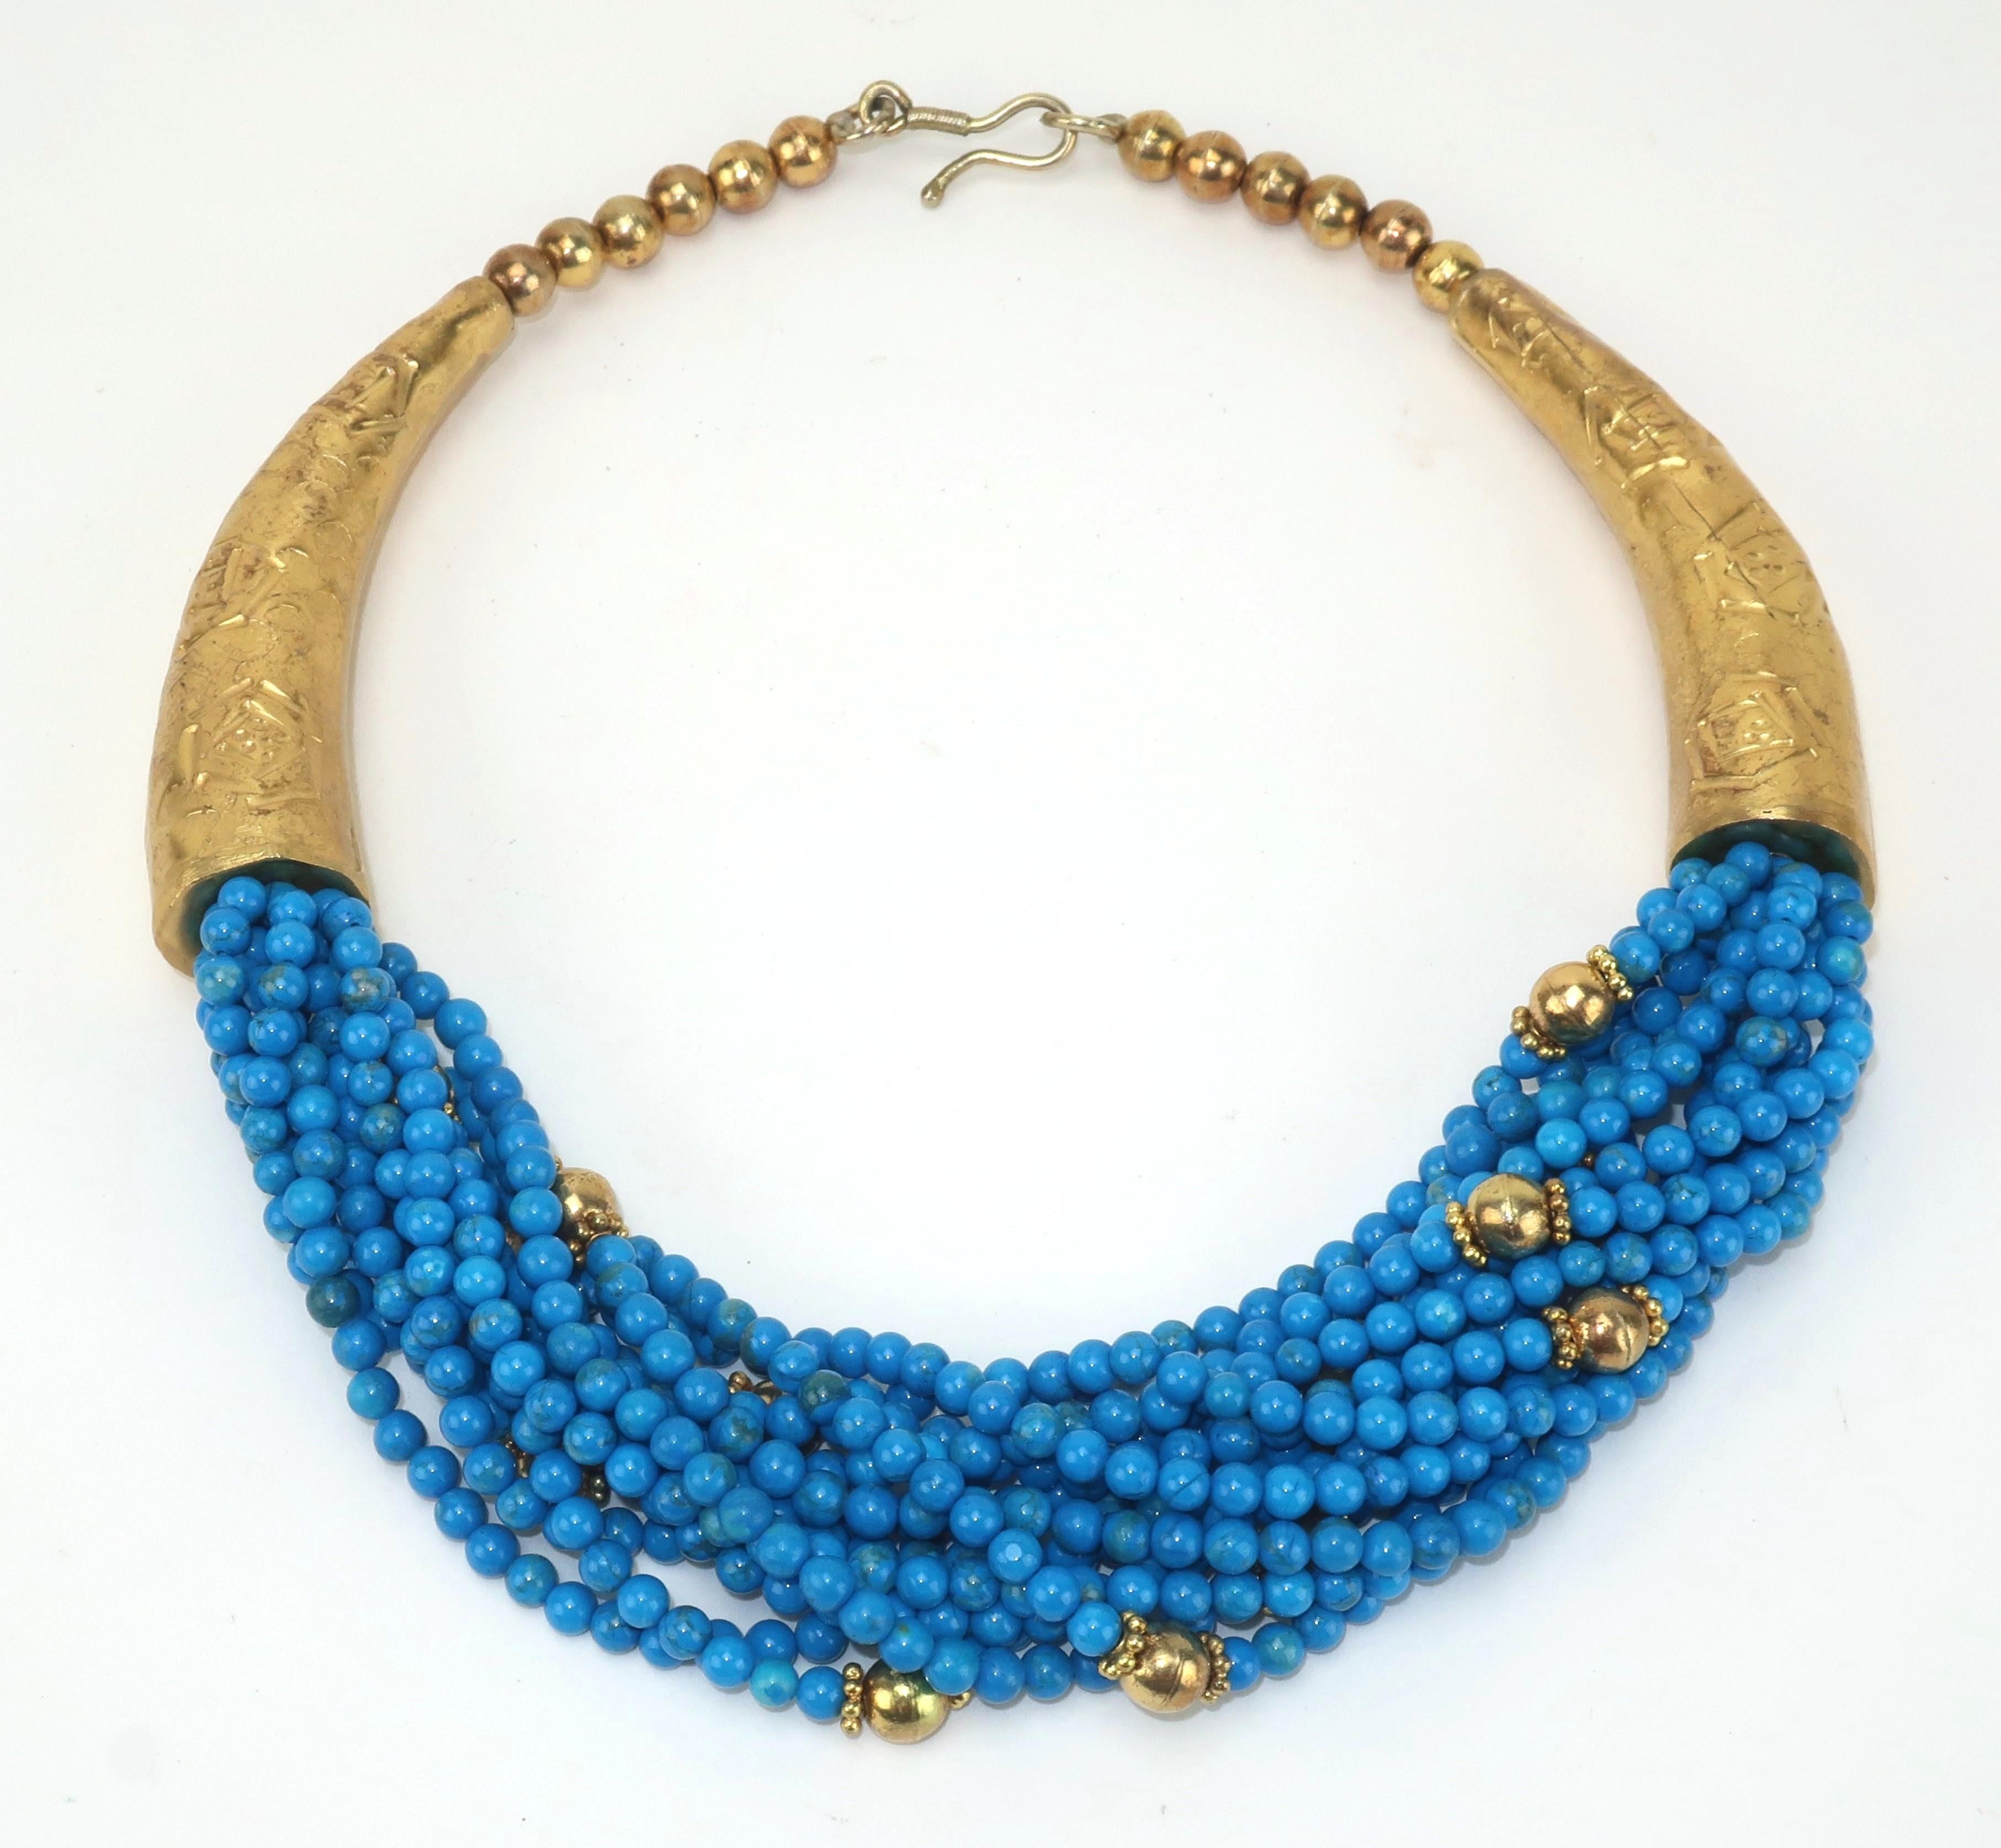 Collier vintage multi-brins conçu avec des perles bleues brillantes et des accents en métal doré.  Muni d'un crochet en J et non signé.  L'ancien propriétaire a acheté cette belle pièce en Égypte et elle présente en effet une merveilleuse esthétique